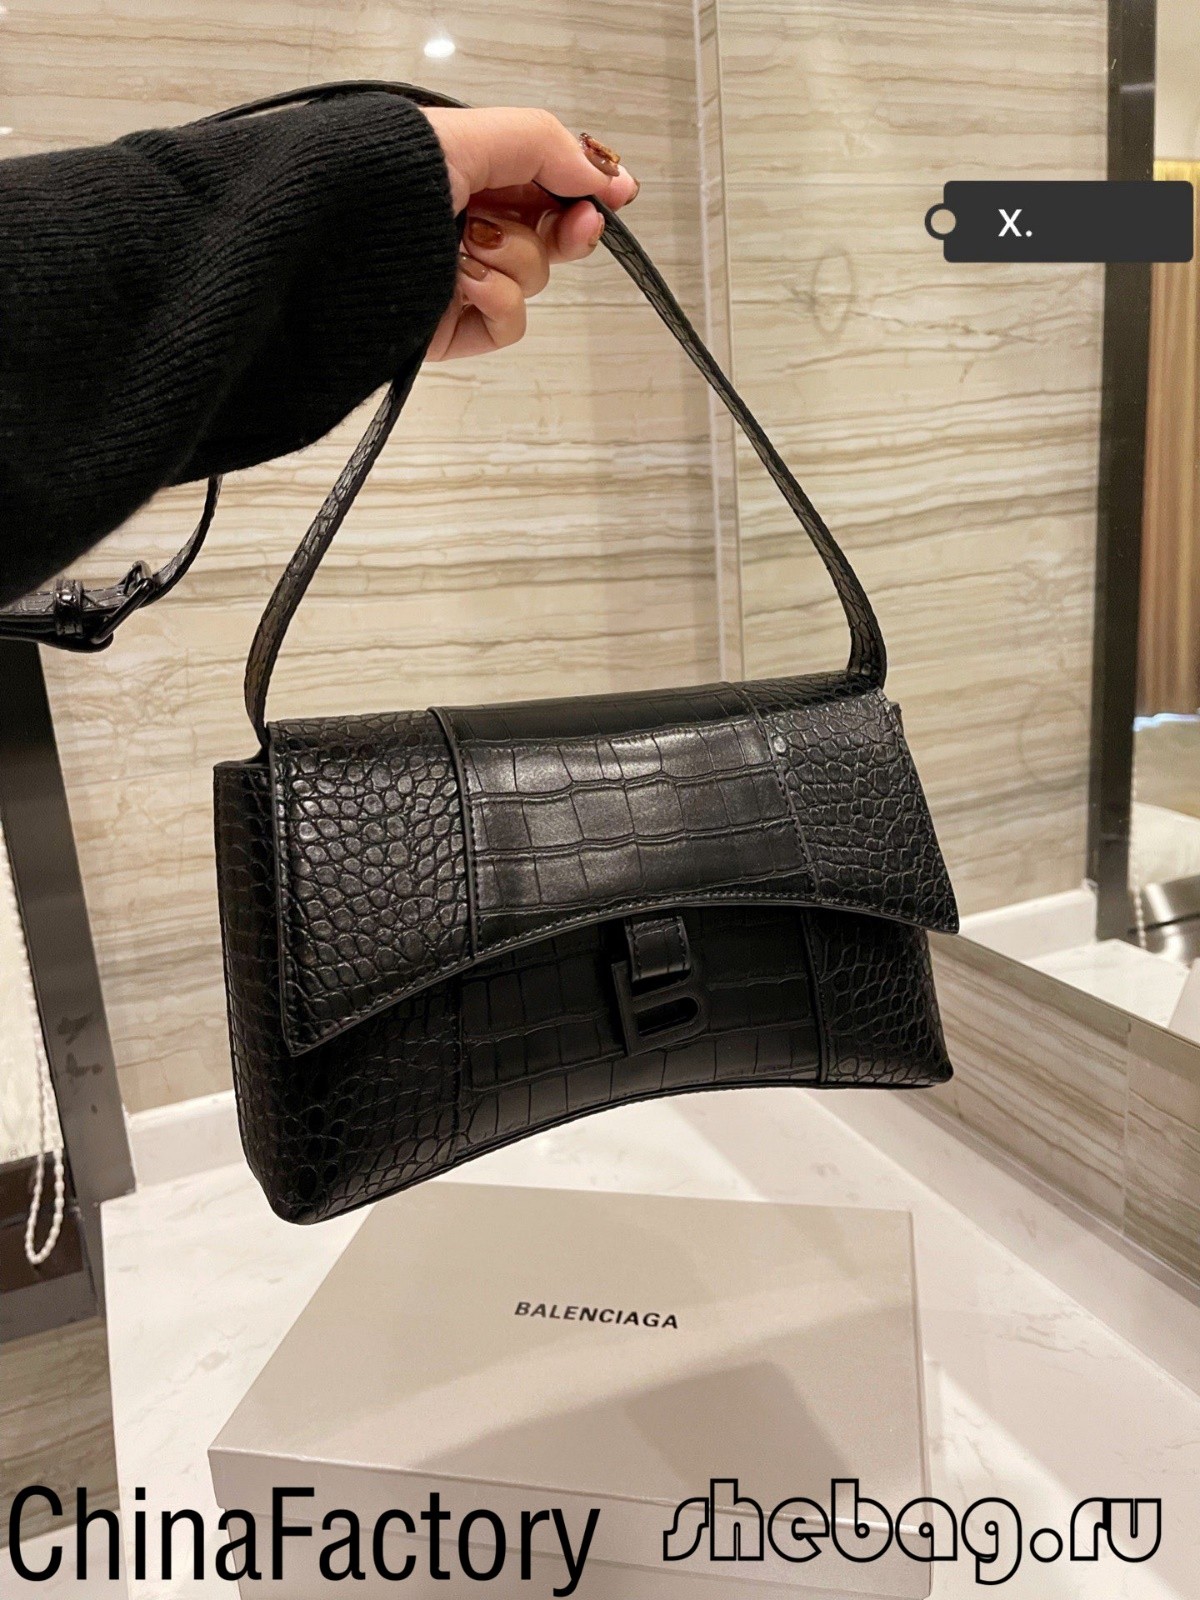 Wie erkennt man eine gefälschte Designer-Tasche? (gefälschte vs. echte Fotos): BALENCIAGA (2022 aktualisiert) – Online-Shop für gefälschte Louis Vuitton-Taschen in bester Qualität, Replica Designer-Tasche ru